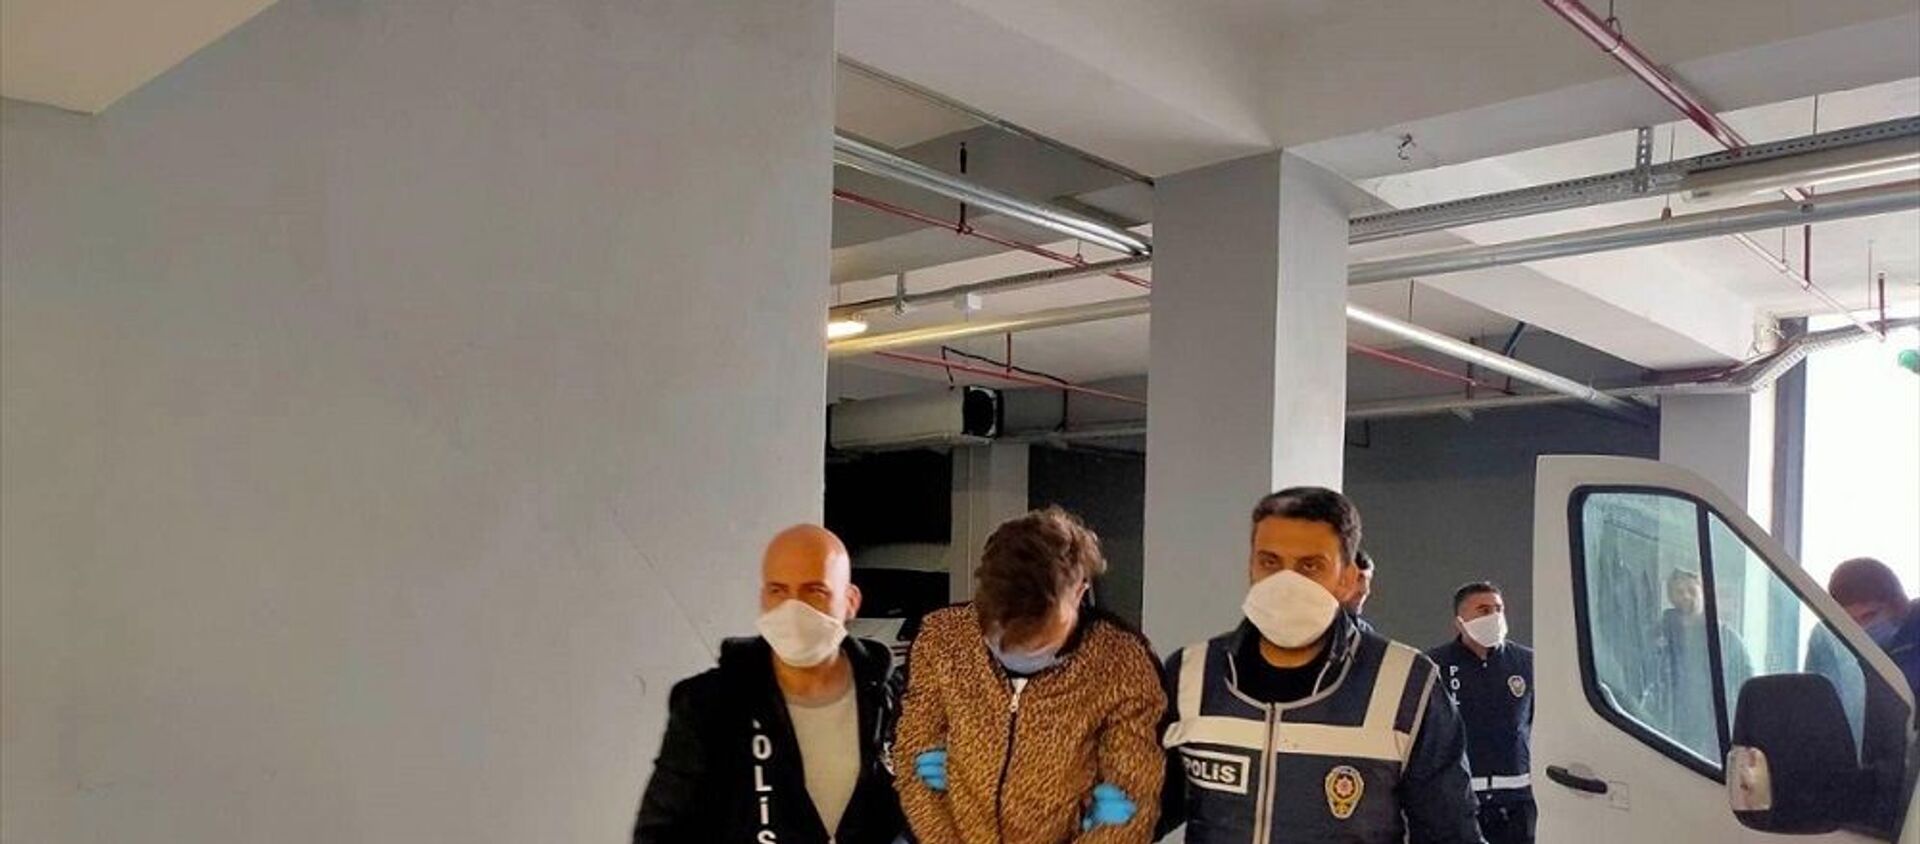 Bolu'da karantinaya alındıkları yurttan sosyal medya paylaşımı yapan 3 kişiden 2'si tutuklandı - Sputnik Türkiye, 1920, 30.03.2020